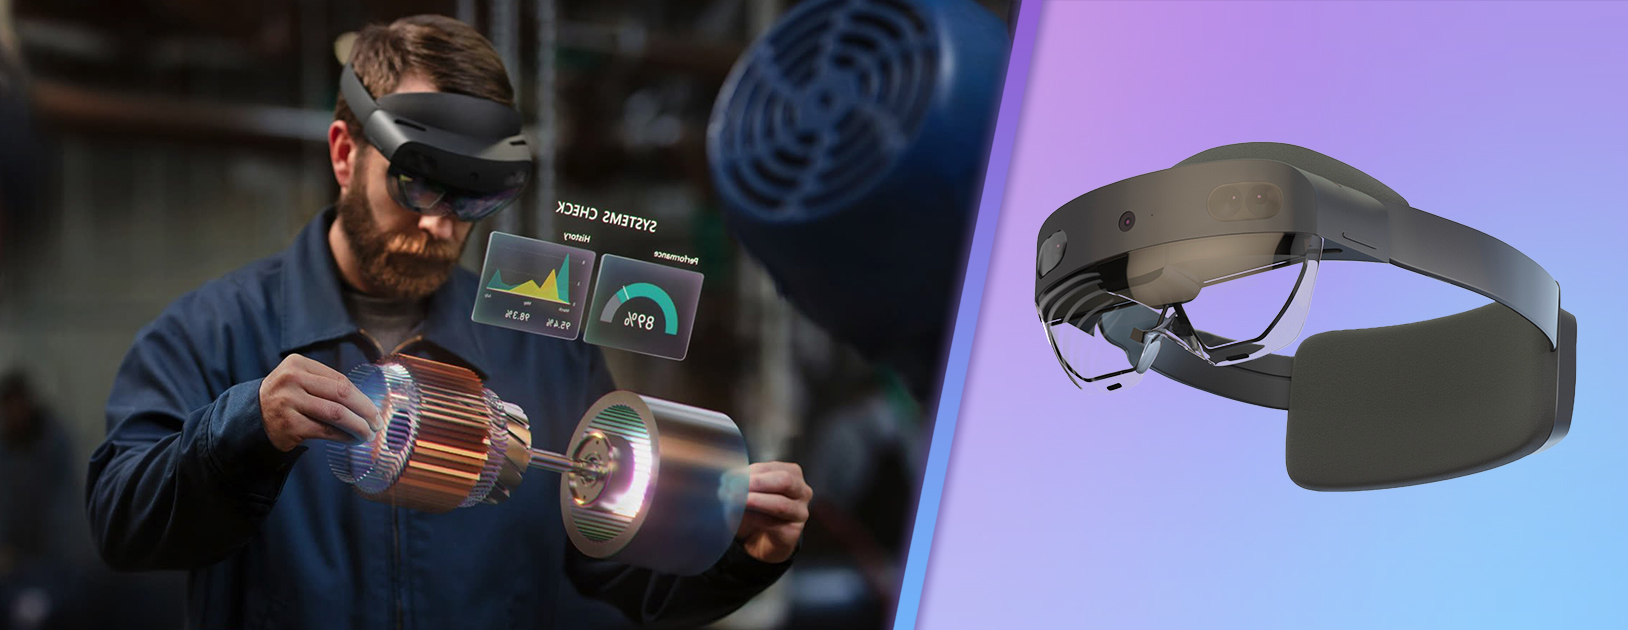 Visuel du casque immersif Microsoft HoloLens pour un usage industriel en Réalité Mixte